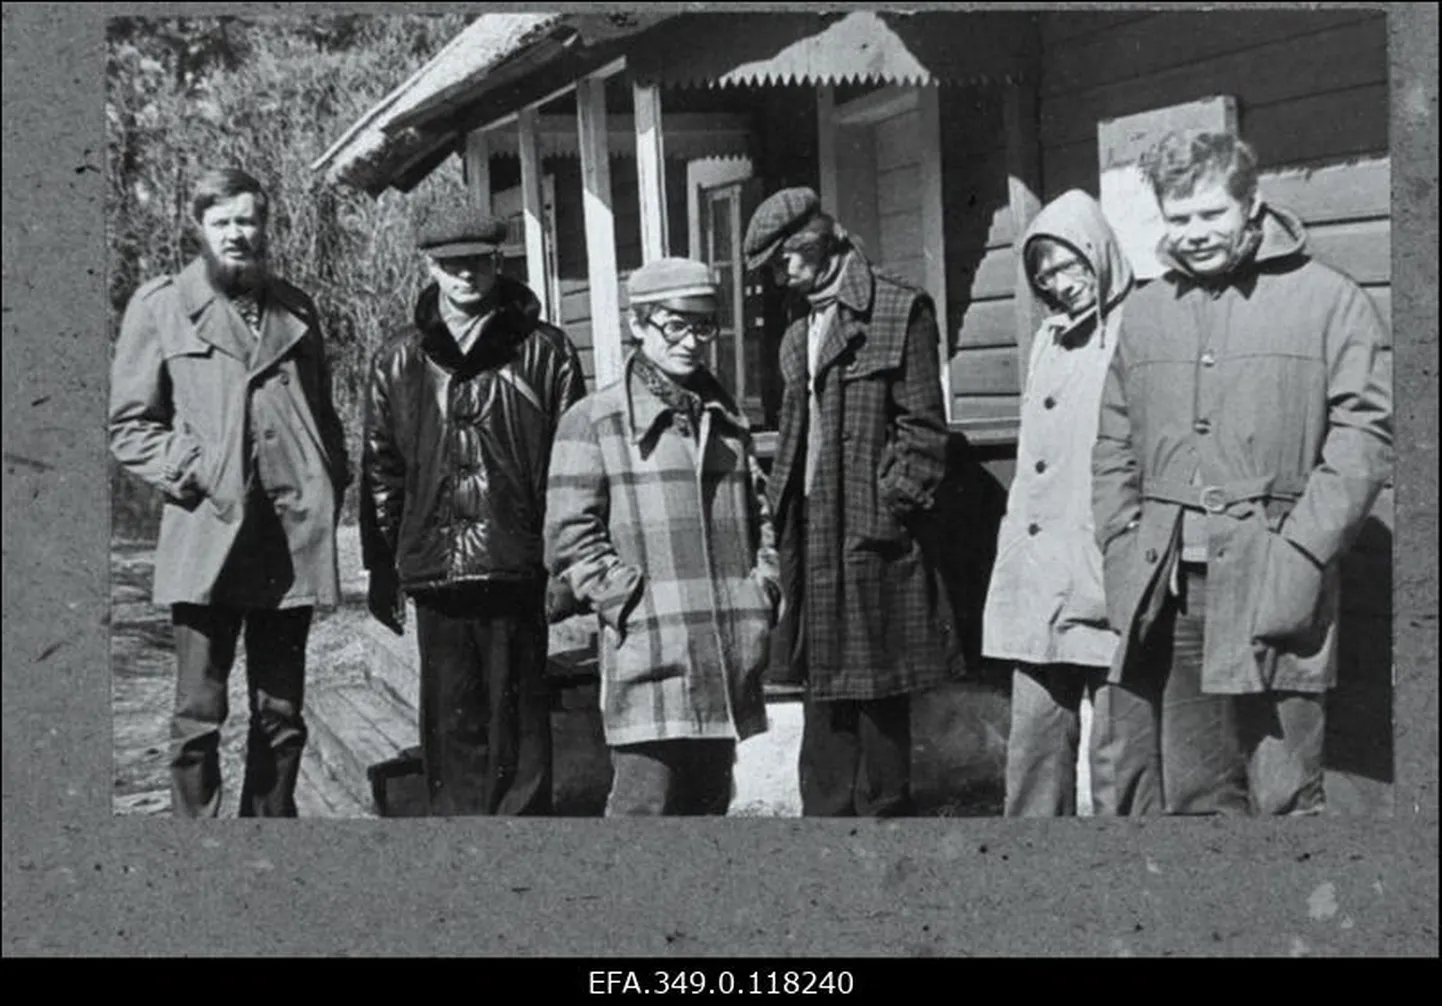 Pildil on Tartu Noorte Autorite Koondise liikmed Kassaris kirjanik Aino Kalda suvemaja juures, aprillis 1981. Vasakult: Aado Lintrop, Rannar Susi, Imre Siil, Taavi Tuulik, Kajar Pruul, Kalev Kesküla.